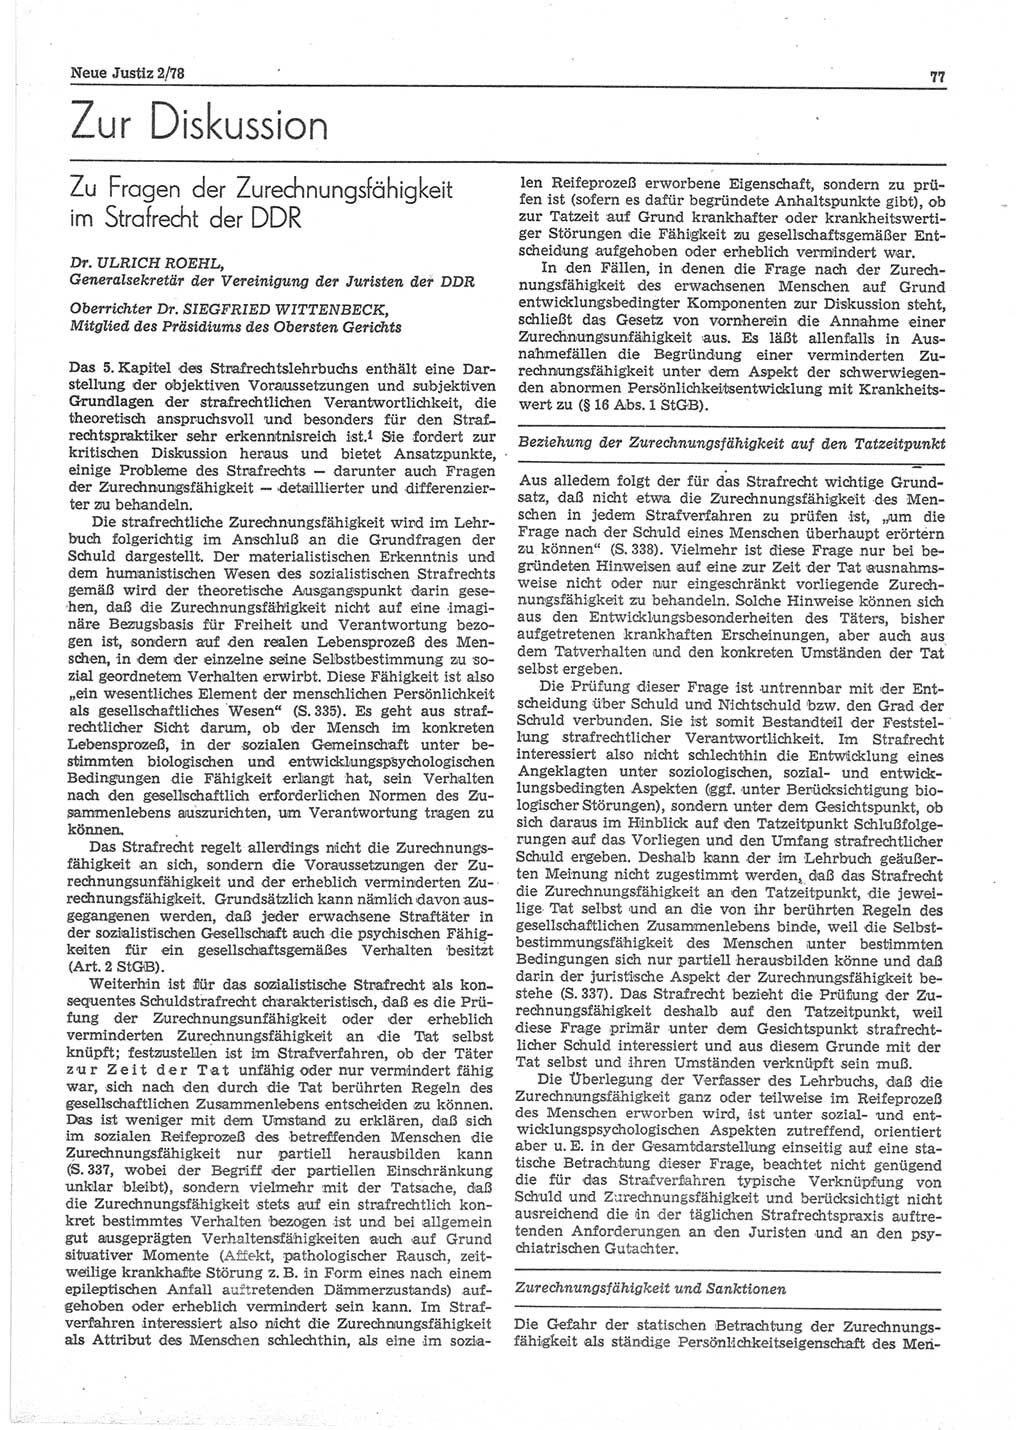 Neue Justiz (NJ), Zeitschrift für sozialistisches Recht und Gesetzlichkeit [Deutsche Demokratische Republik (DDR)], 32. Jahrgang 1978, Seite 77 (NJ DDR 1978, S. 77)